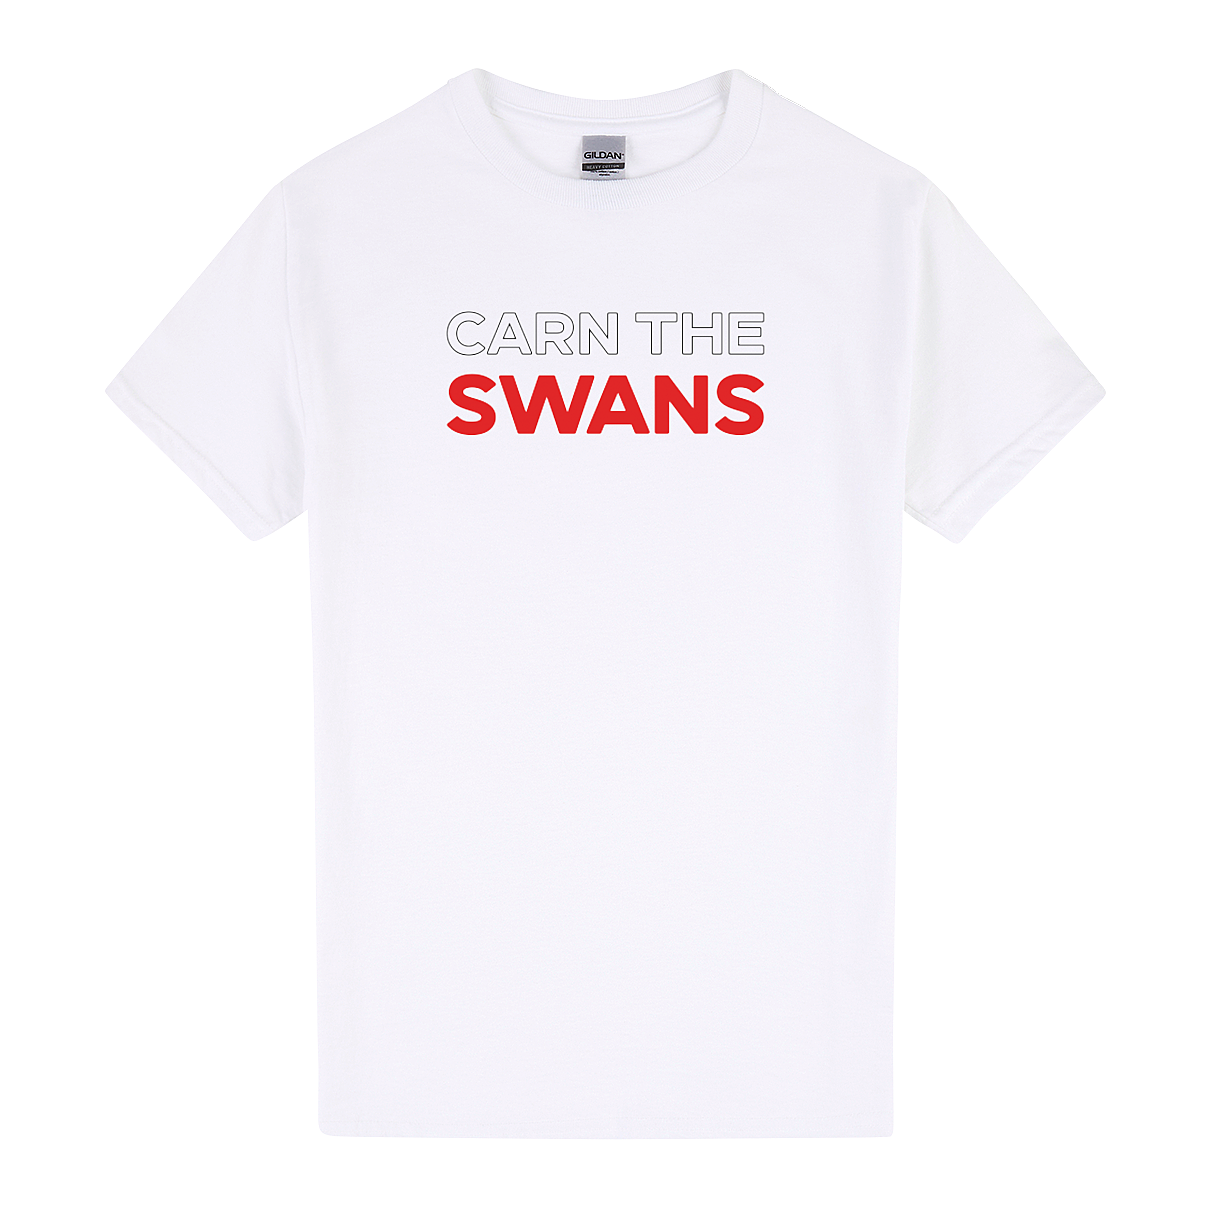 Swans Footy Tee